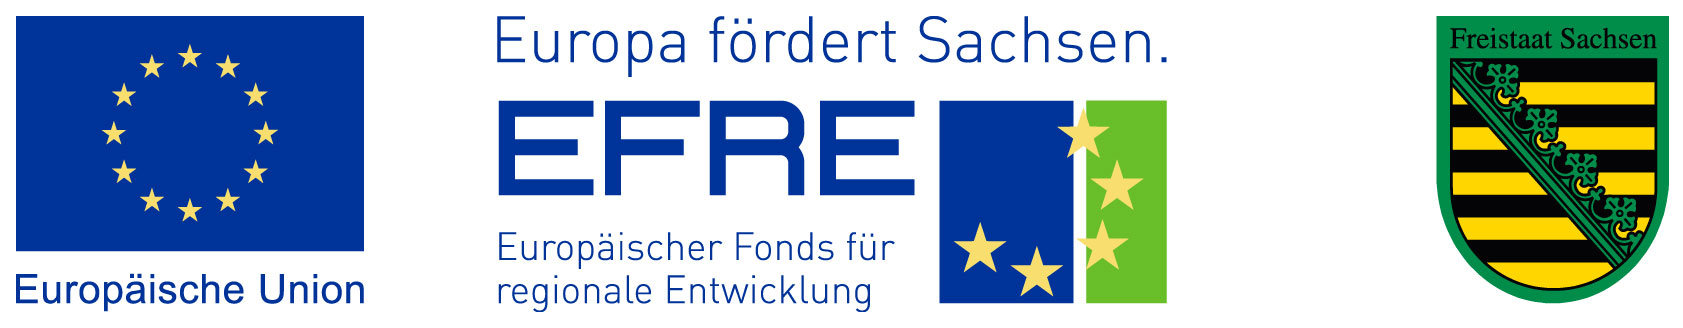 EFRE_Sachsen - Europäischer Fond für regionale Entwicklung